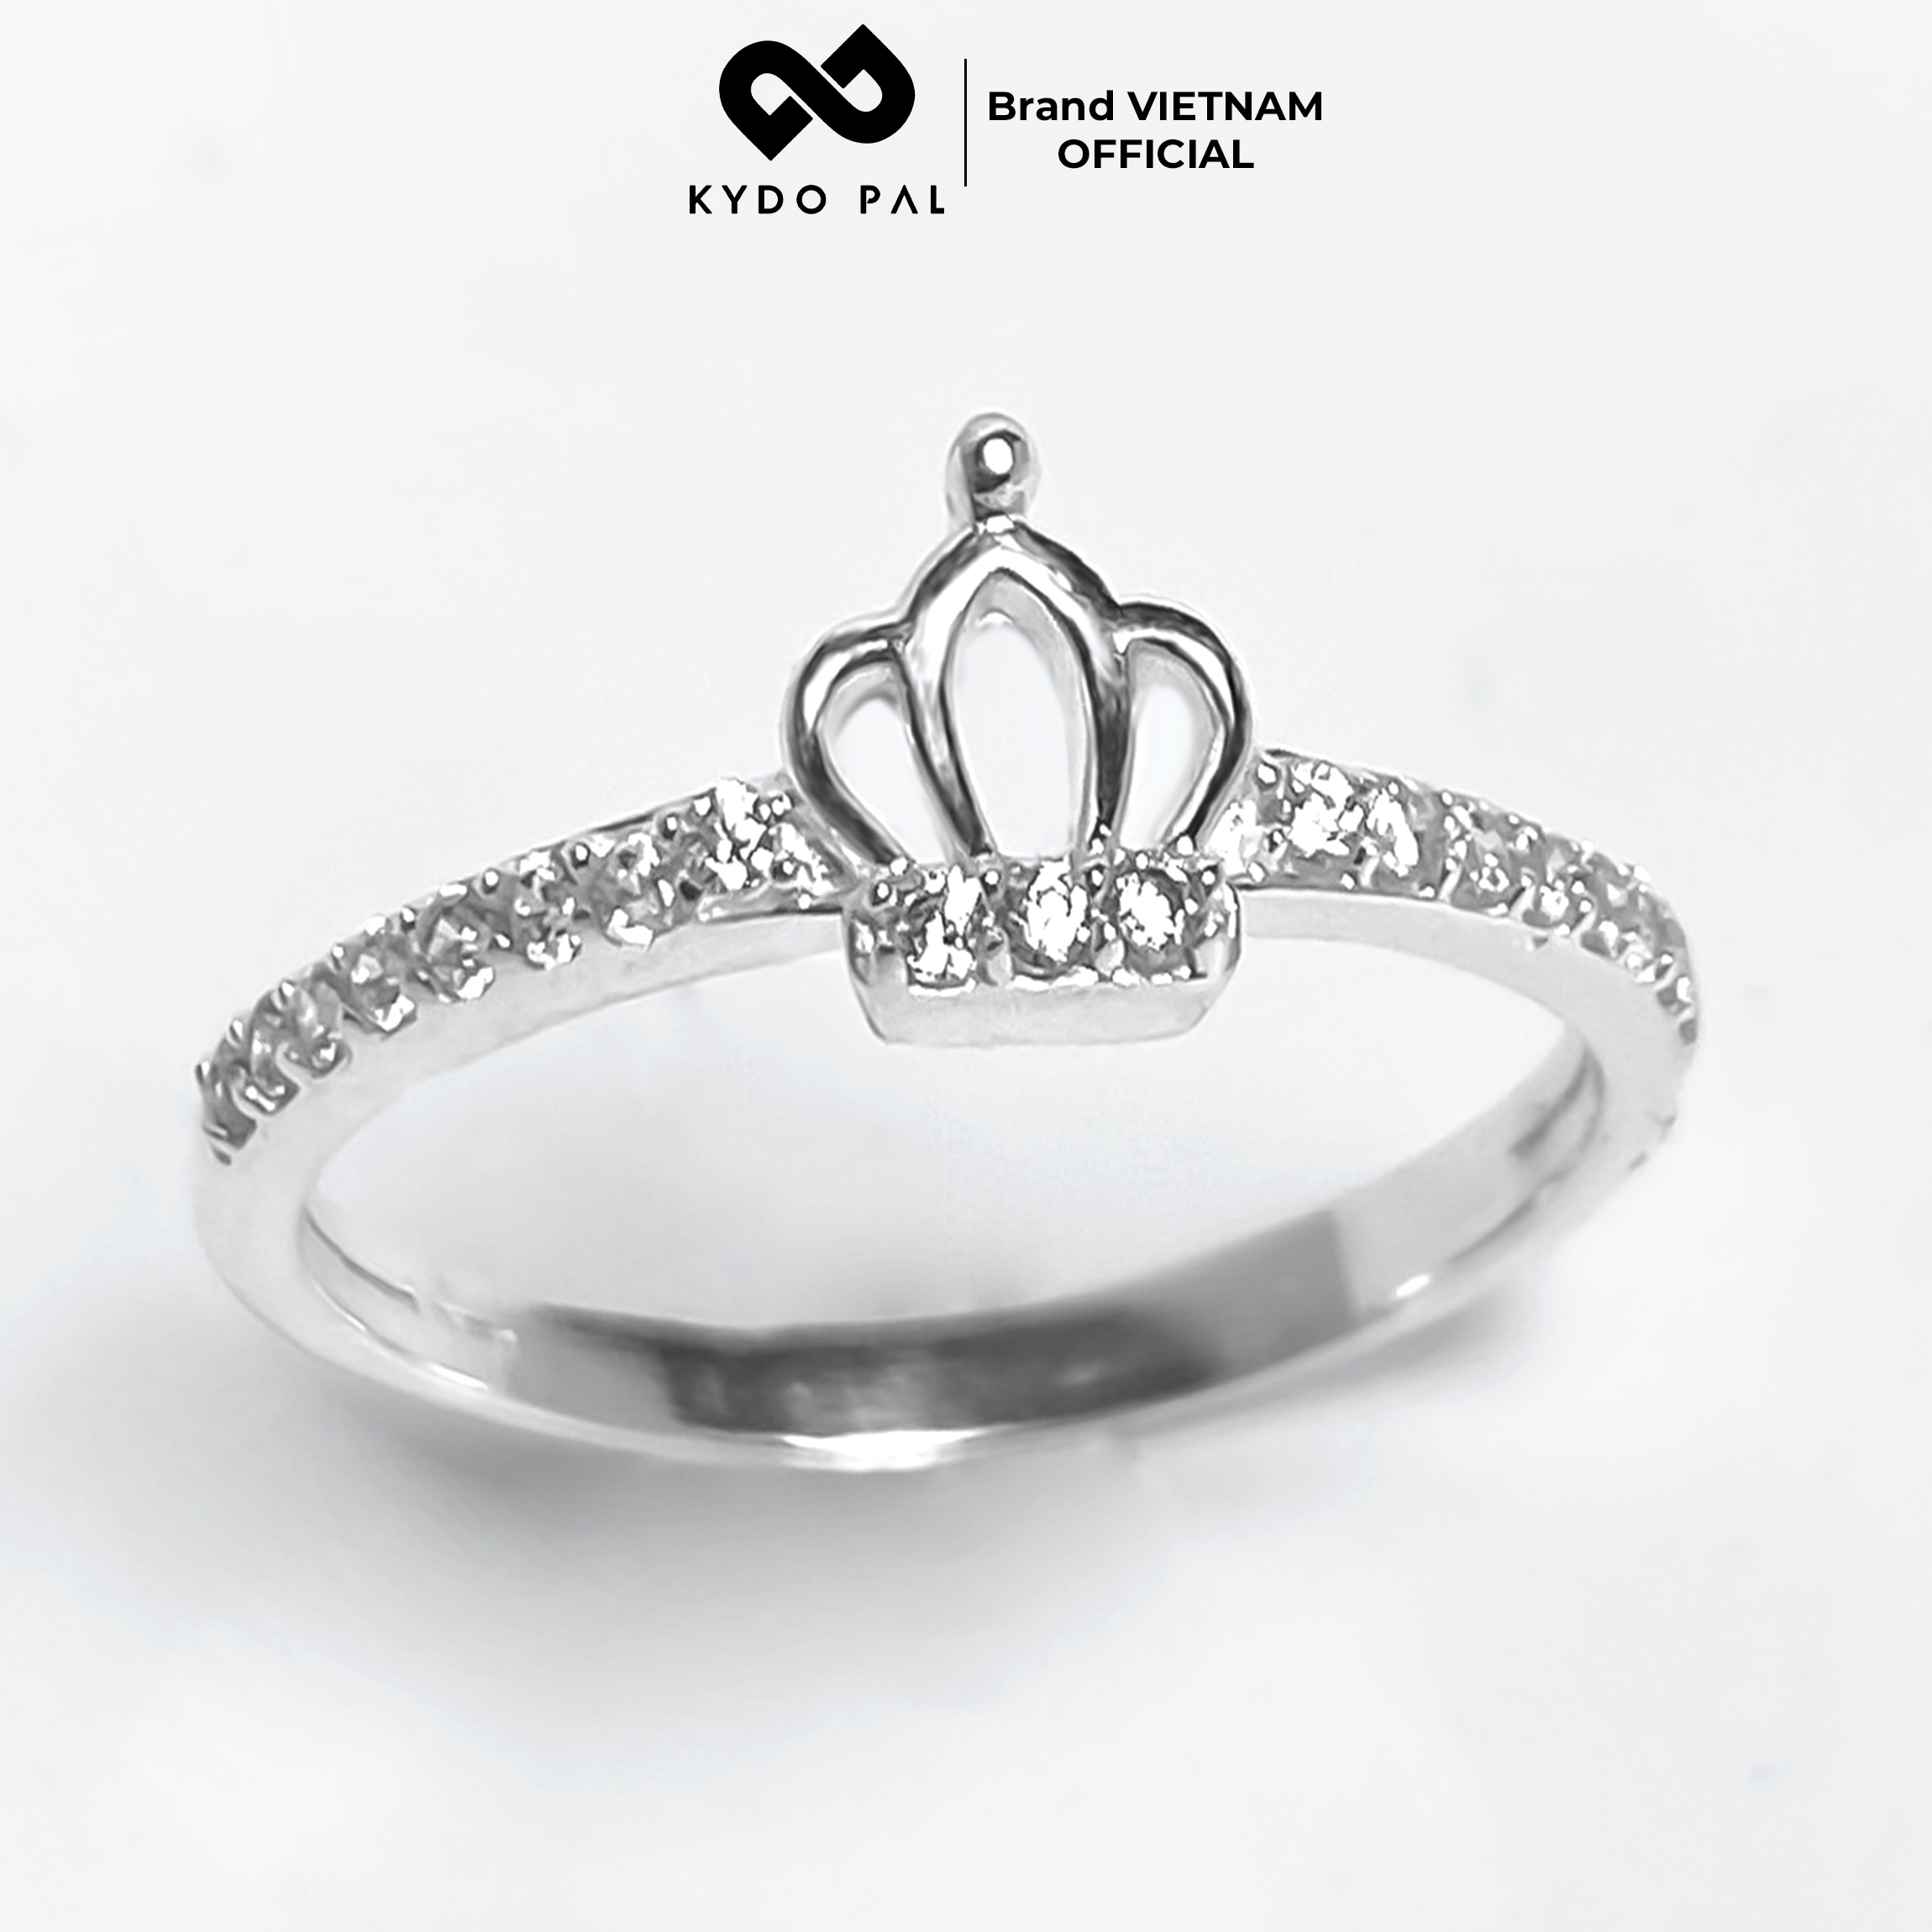 Nhẫn bạc 925 KYDOPAL vương miện đính đá trang sức nữ cá tính cao cấp - 9N23 thumbnail